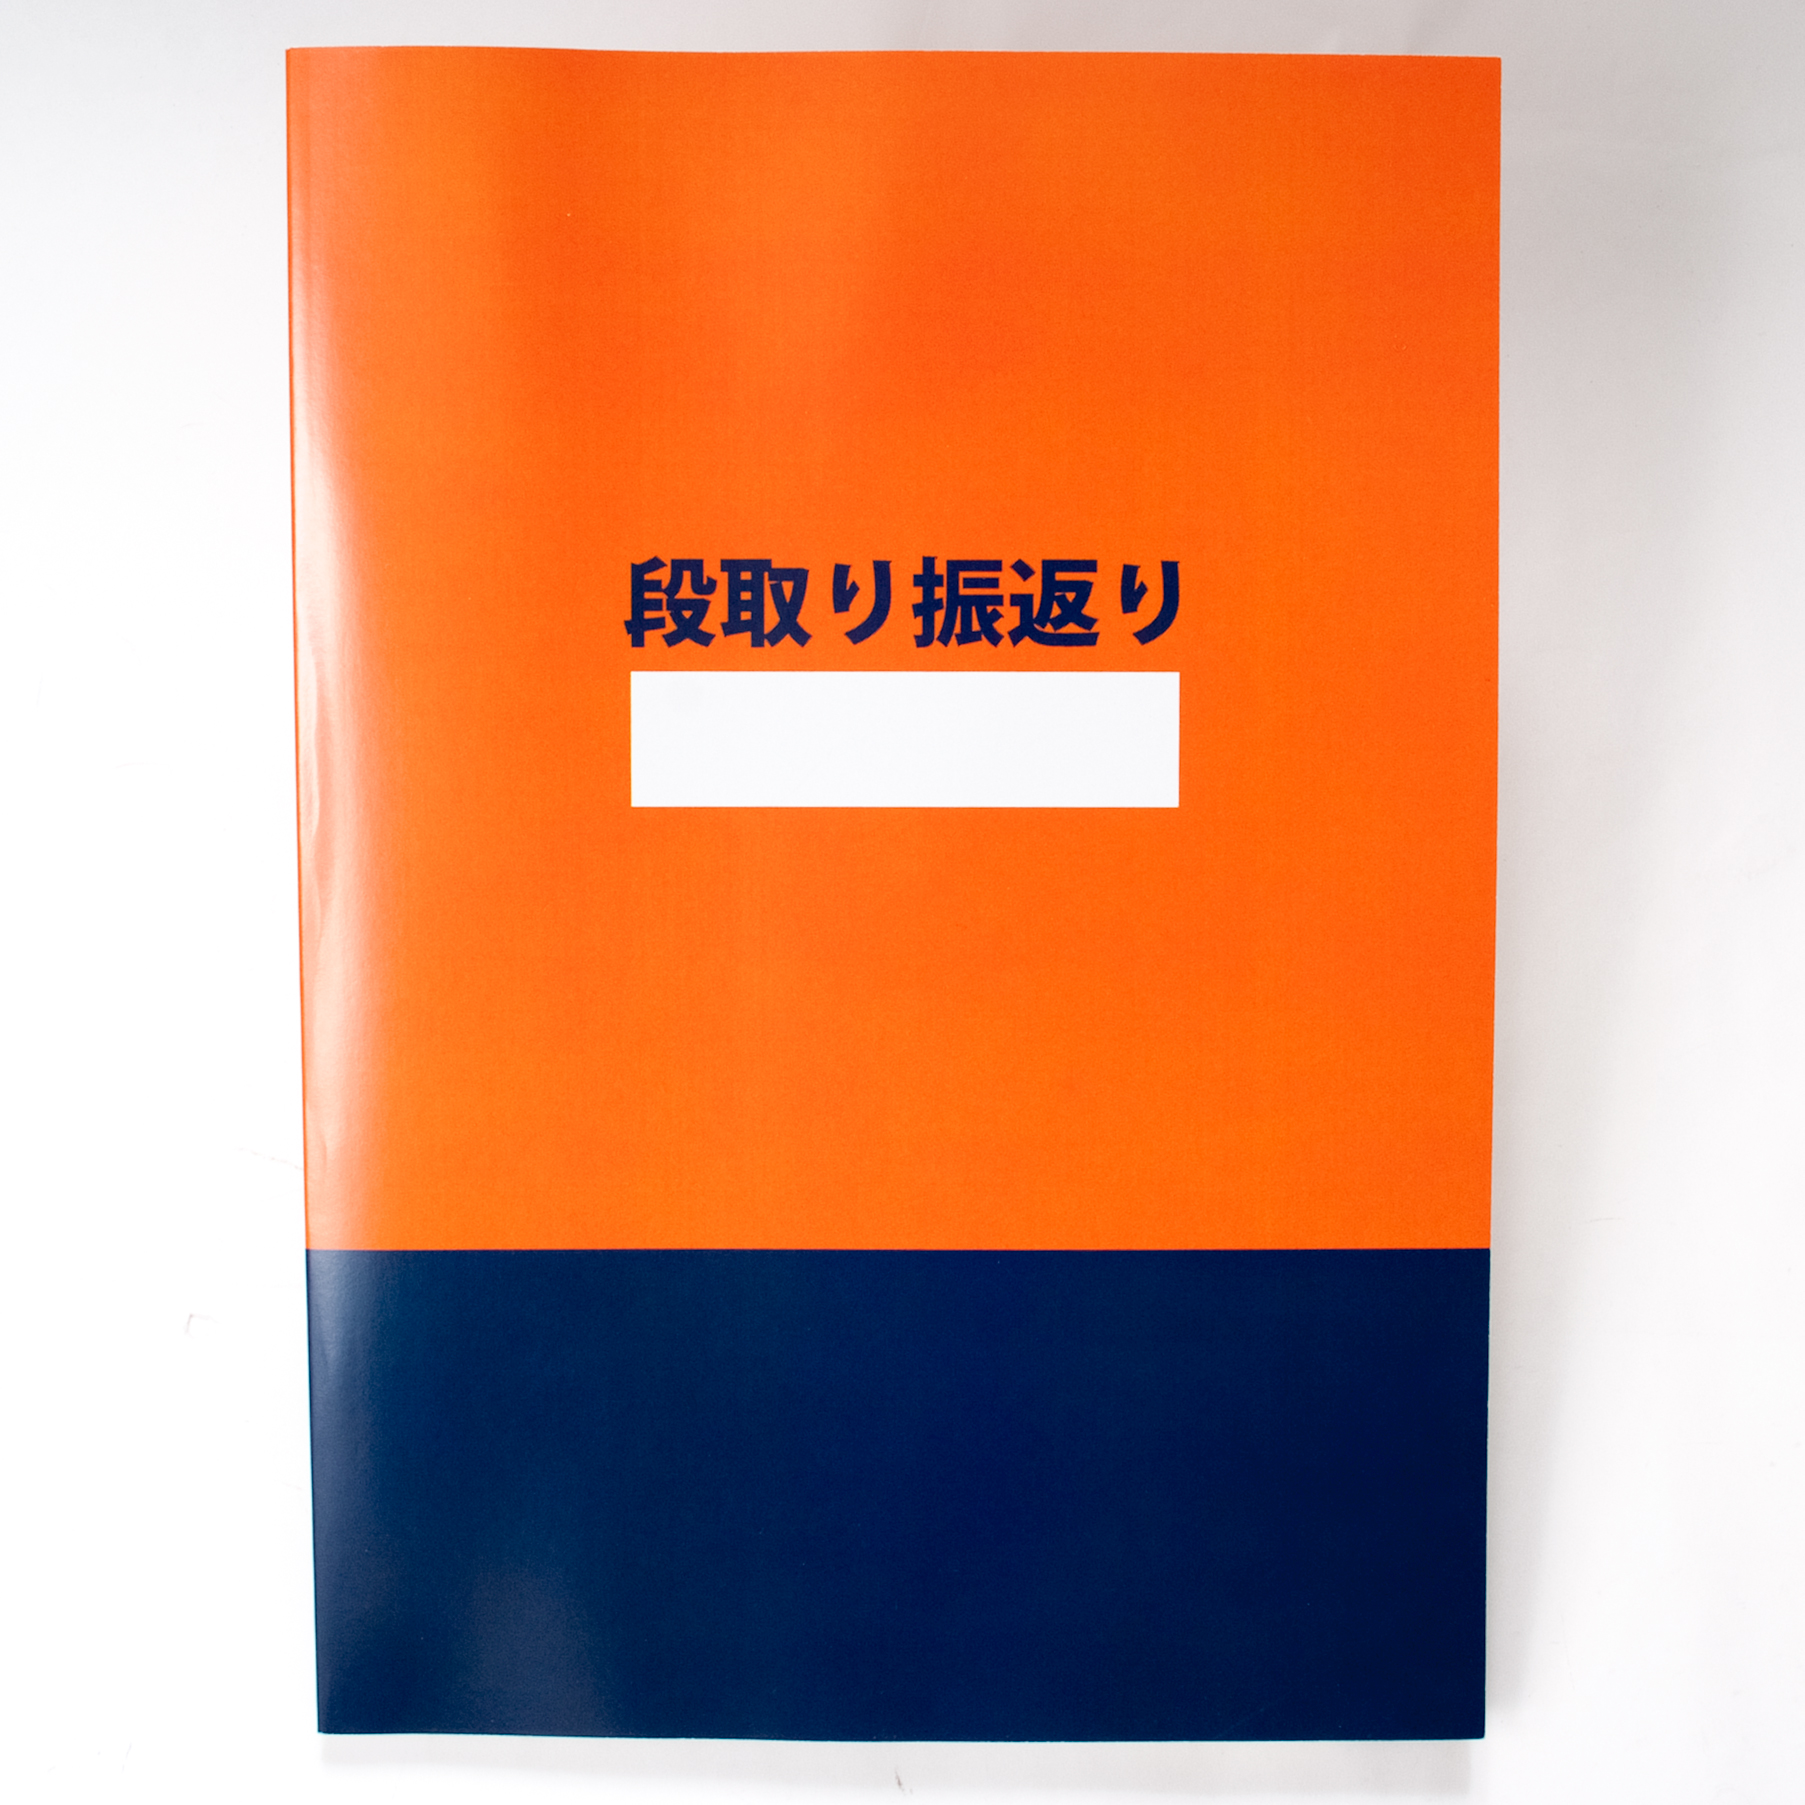 「ブックオフ福岡株式会社 様」製作のオリジナルノート